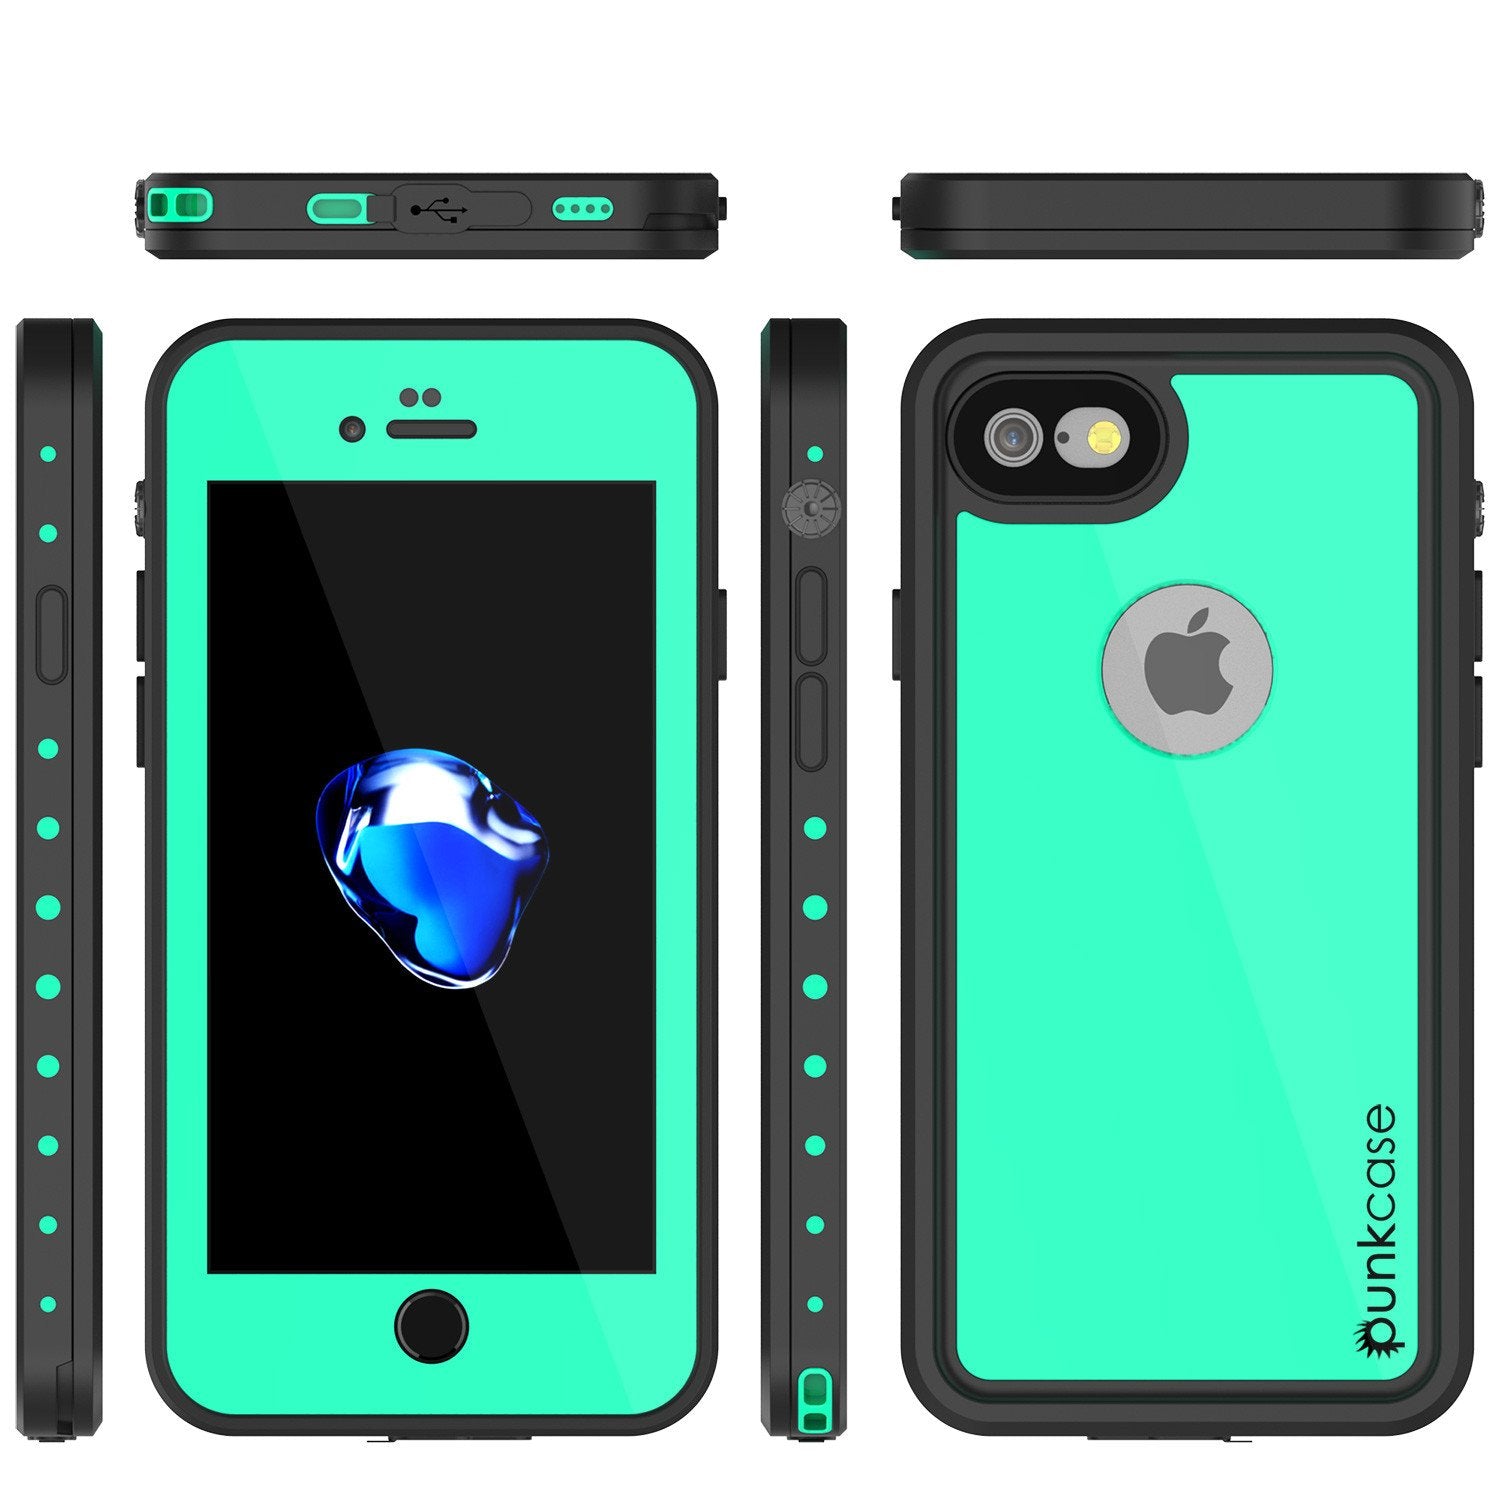 iPhone 7 Waterproof IP68 Case, Punkcase [Teal] [StudStar Series] [Slim Fit] [Dirtproof] [Snowproof]